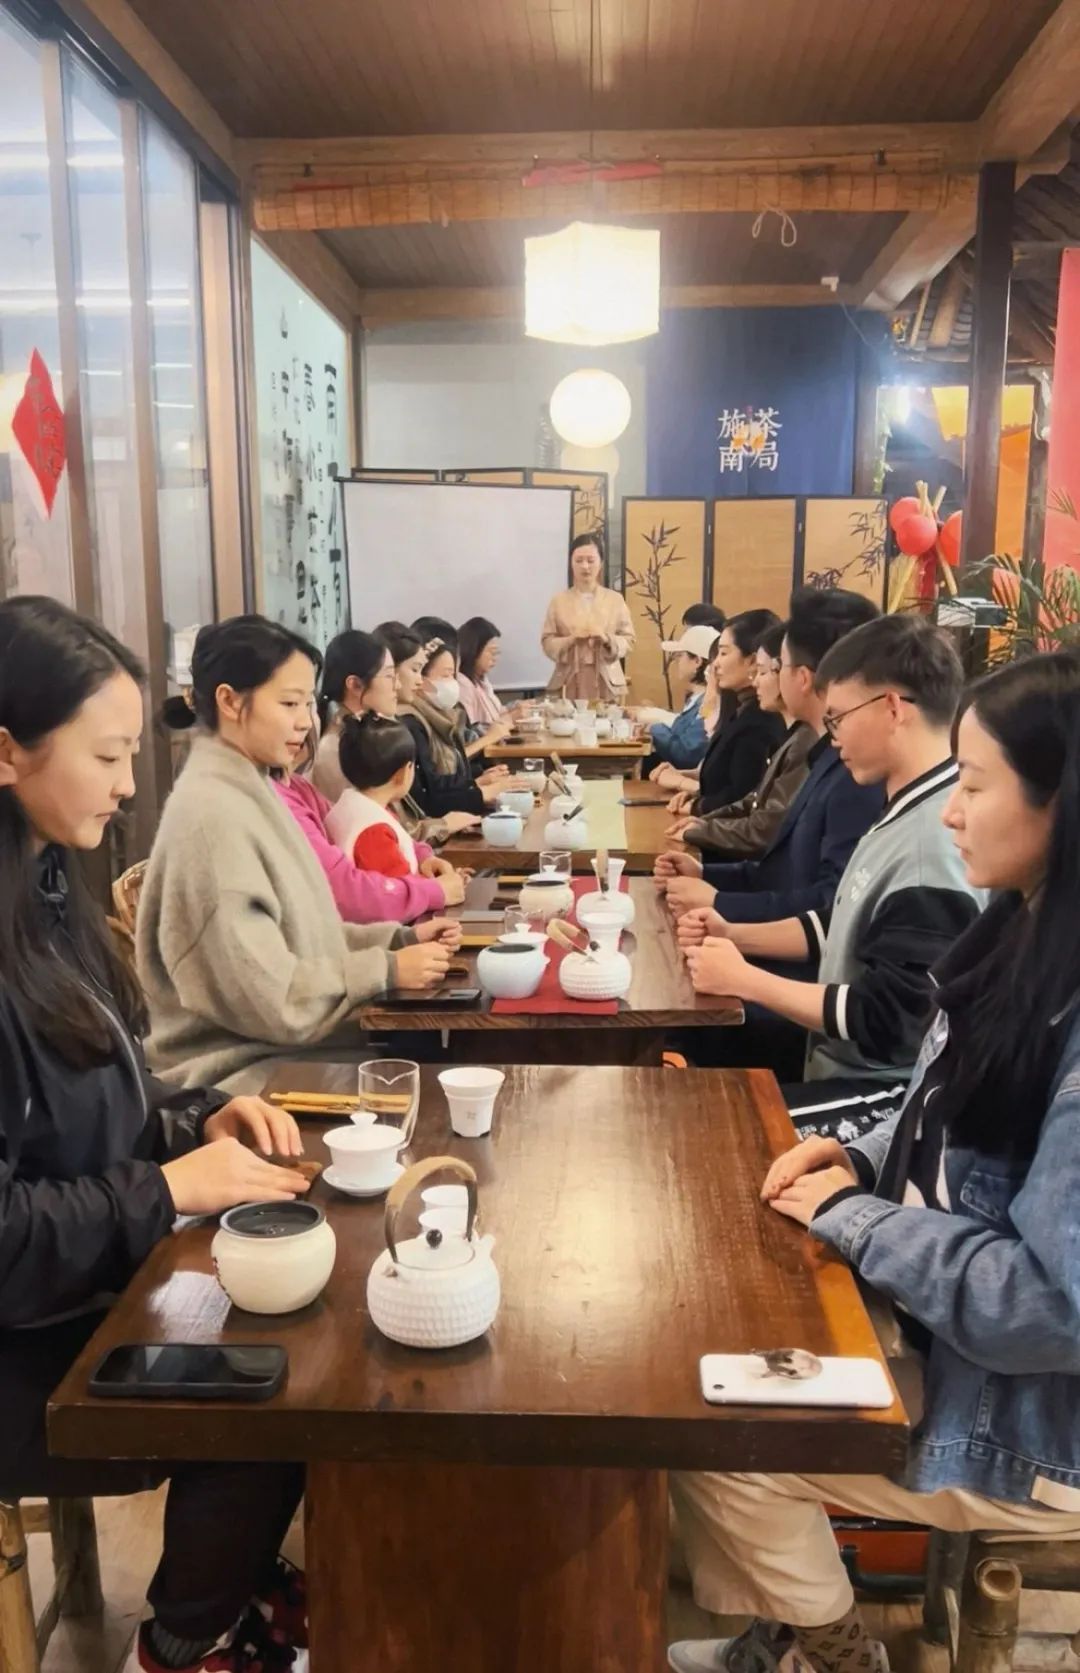 湖北省恩施市で行われている茶芸教室には、若者たちが連れ立って参加していた。